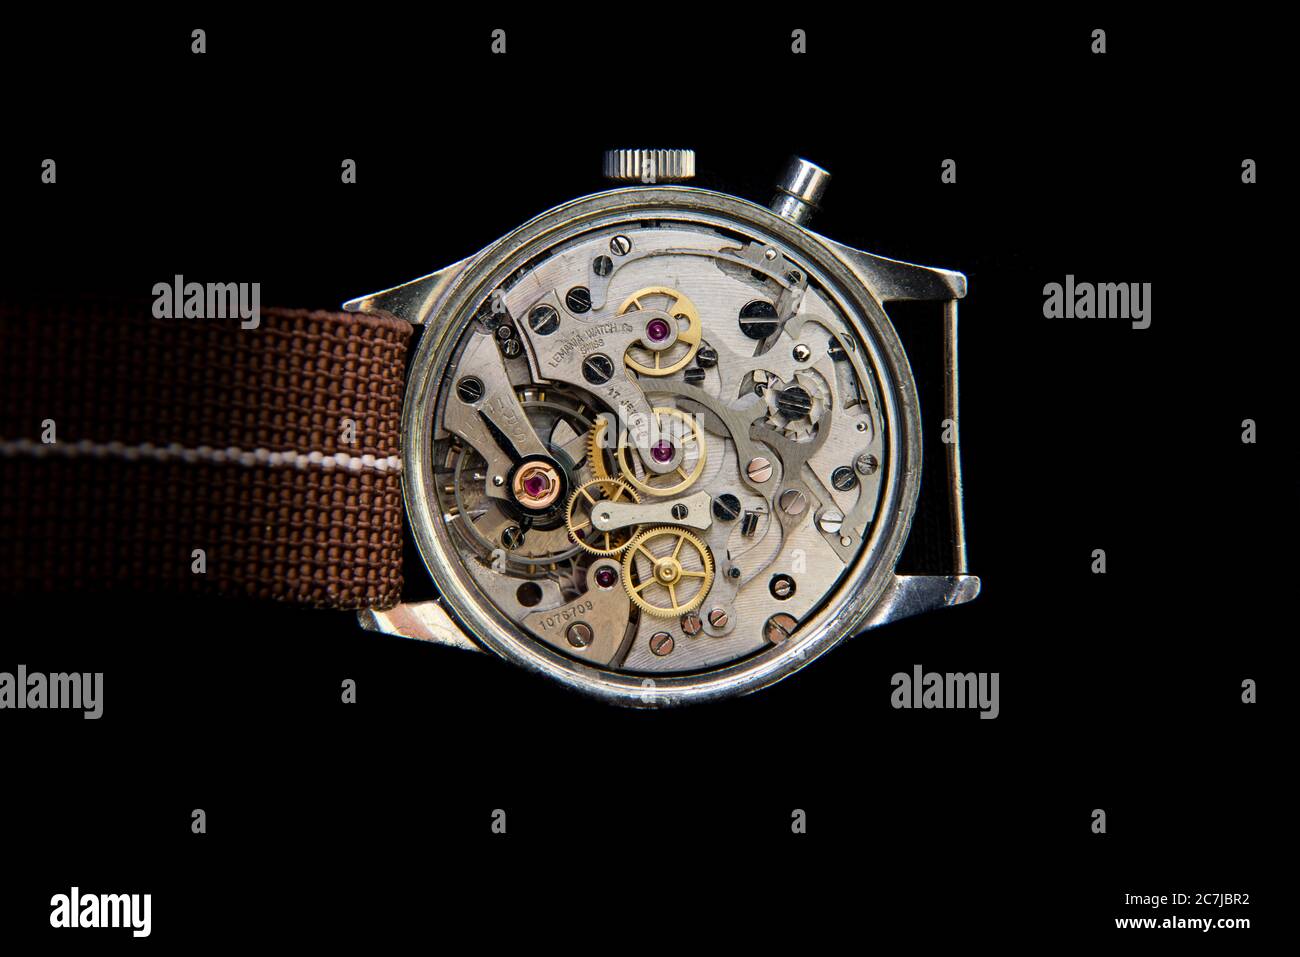 Vintage Lemania mécanique chronographe mouvement montre-bracelet sur fond noir Banque D'Images